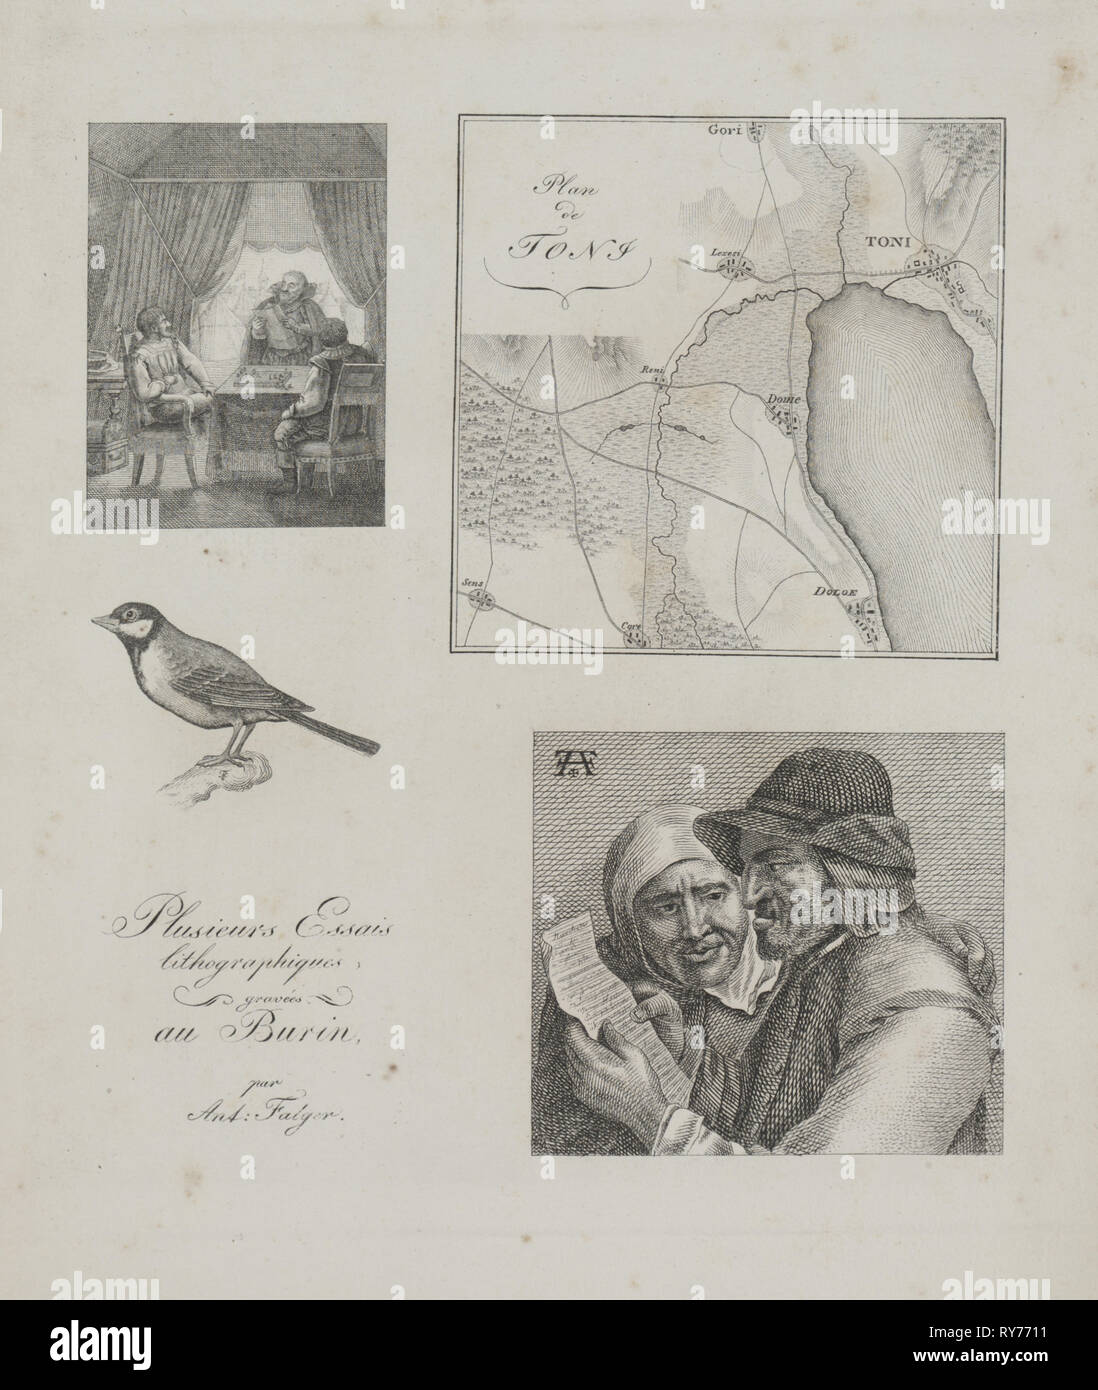 Art de la lithographie : Quatre exemples de gravure, la guerre tente, Plan de Toni, oiseau, agriculteur néerlandais et de la femme, 1819. Alois Senefelder (allemand, 1771-1834). Fiche technique : Lithographie ; 29,9 x 23,3 cm (11 3/4 x 9 3/16 in.) ; image : 19,8 x 17,5 cm (7 13/16 x 6 7/8 po Banque D'Images